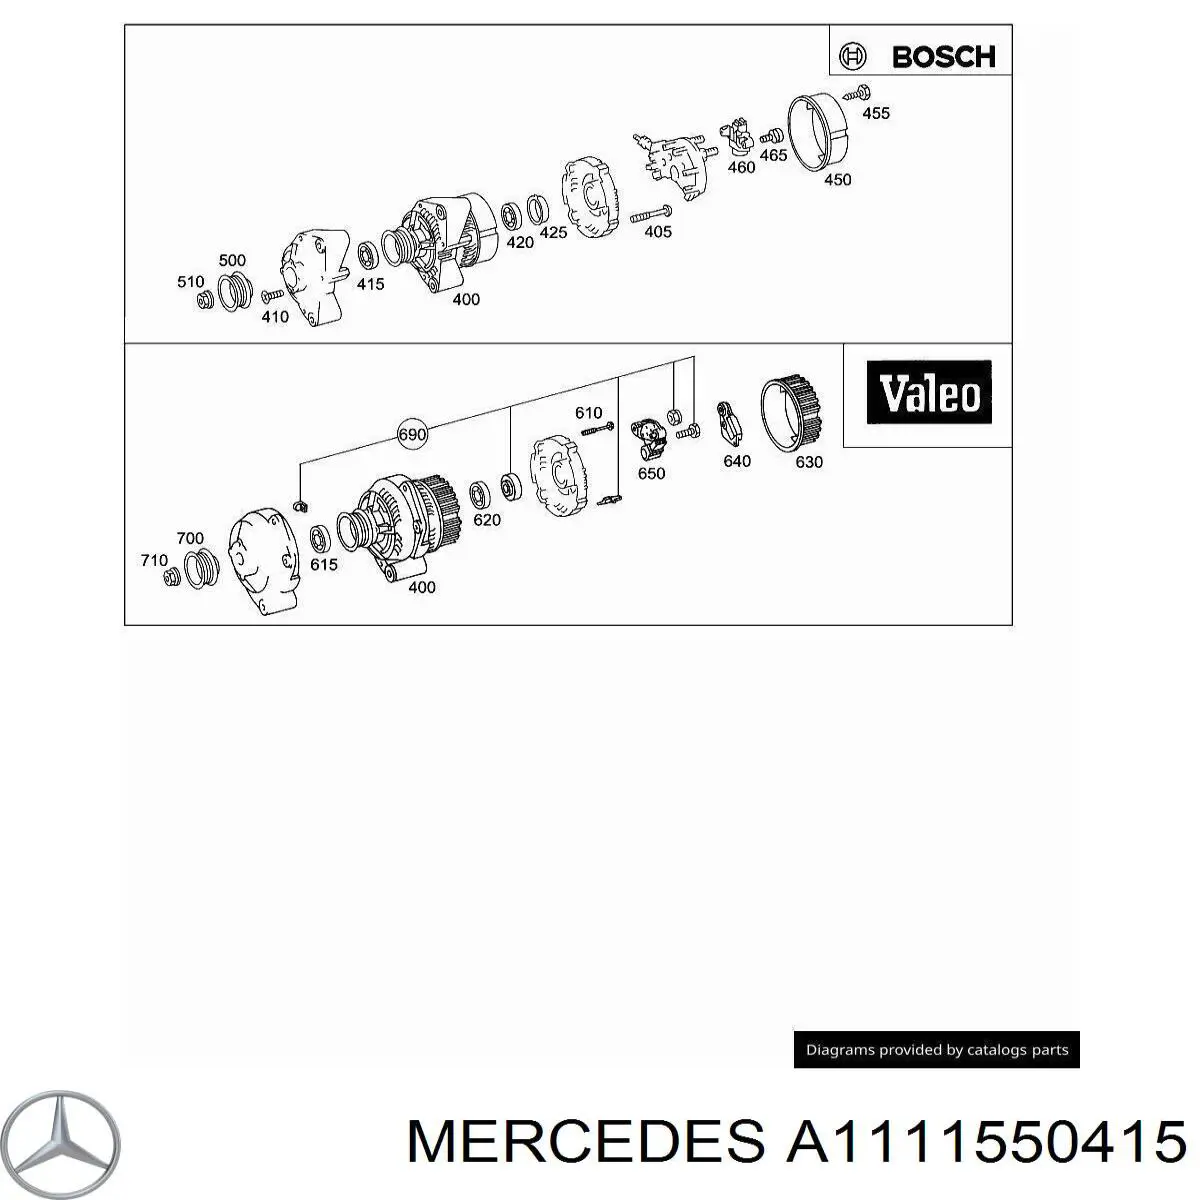 A1111550415 Mercedes polea del alternador